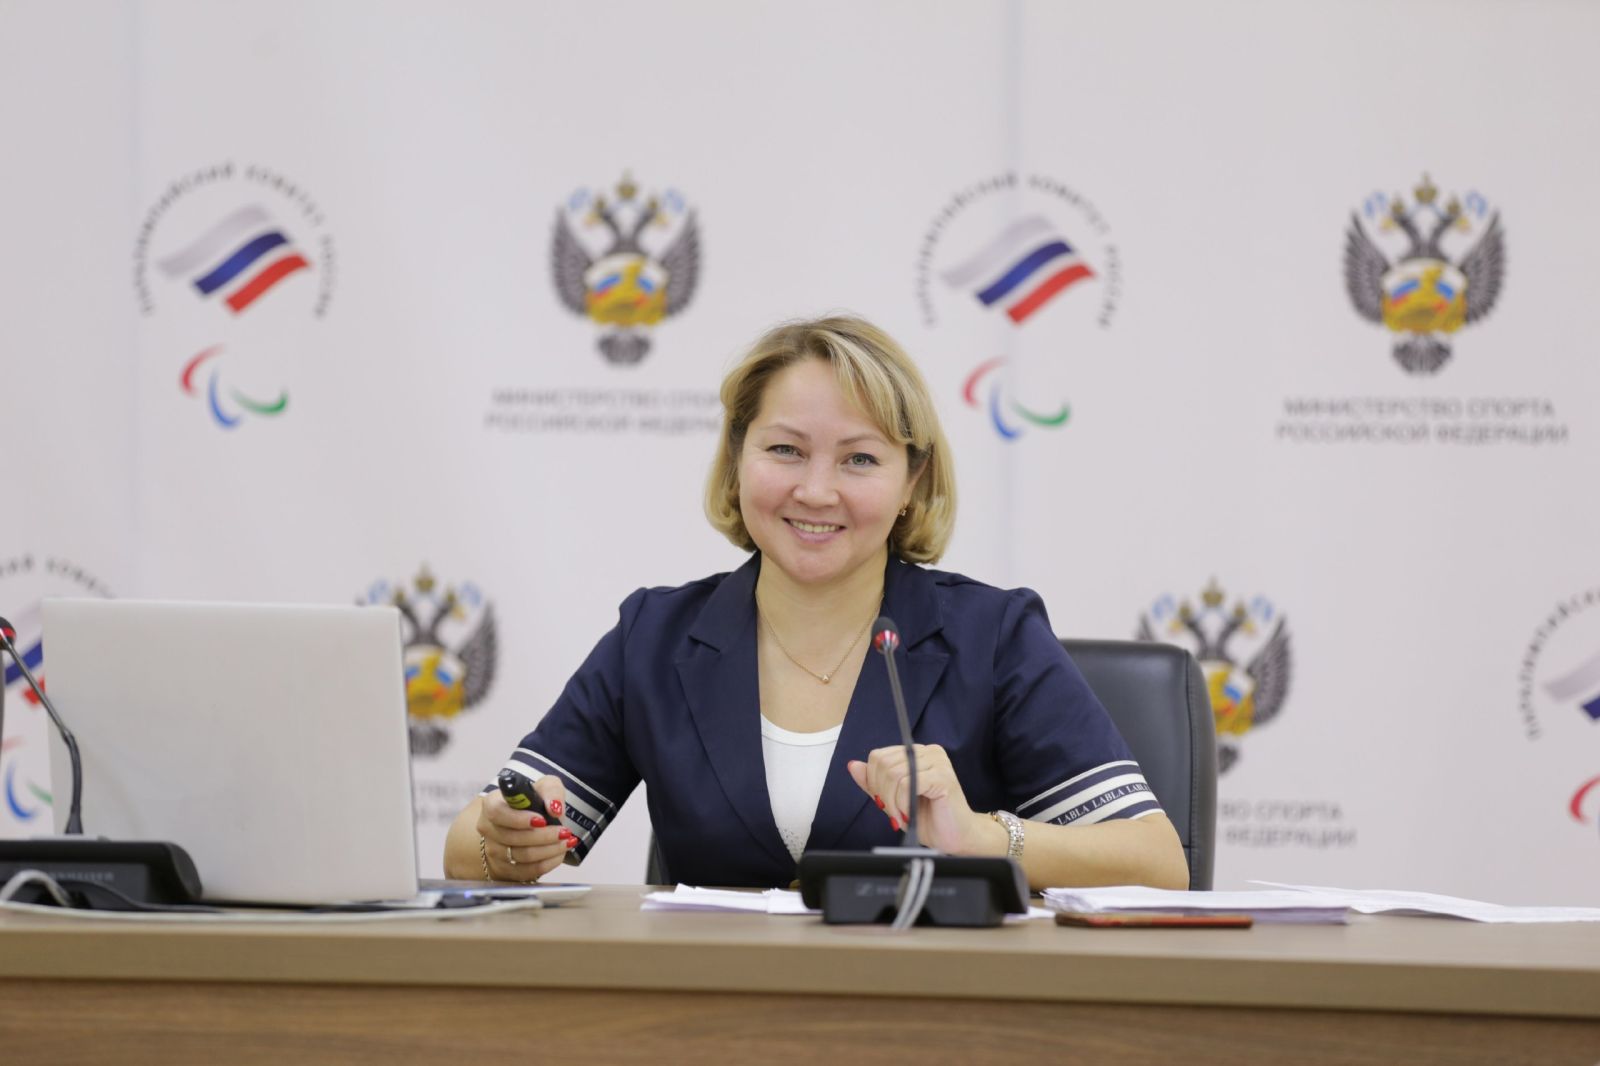 ПКР провел Антидопинговый семинар для медицинского персонала спортивных сборных команд России по паралимпийским видам спорта